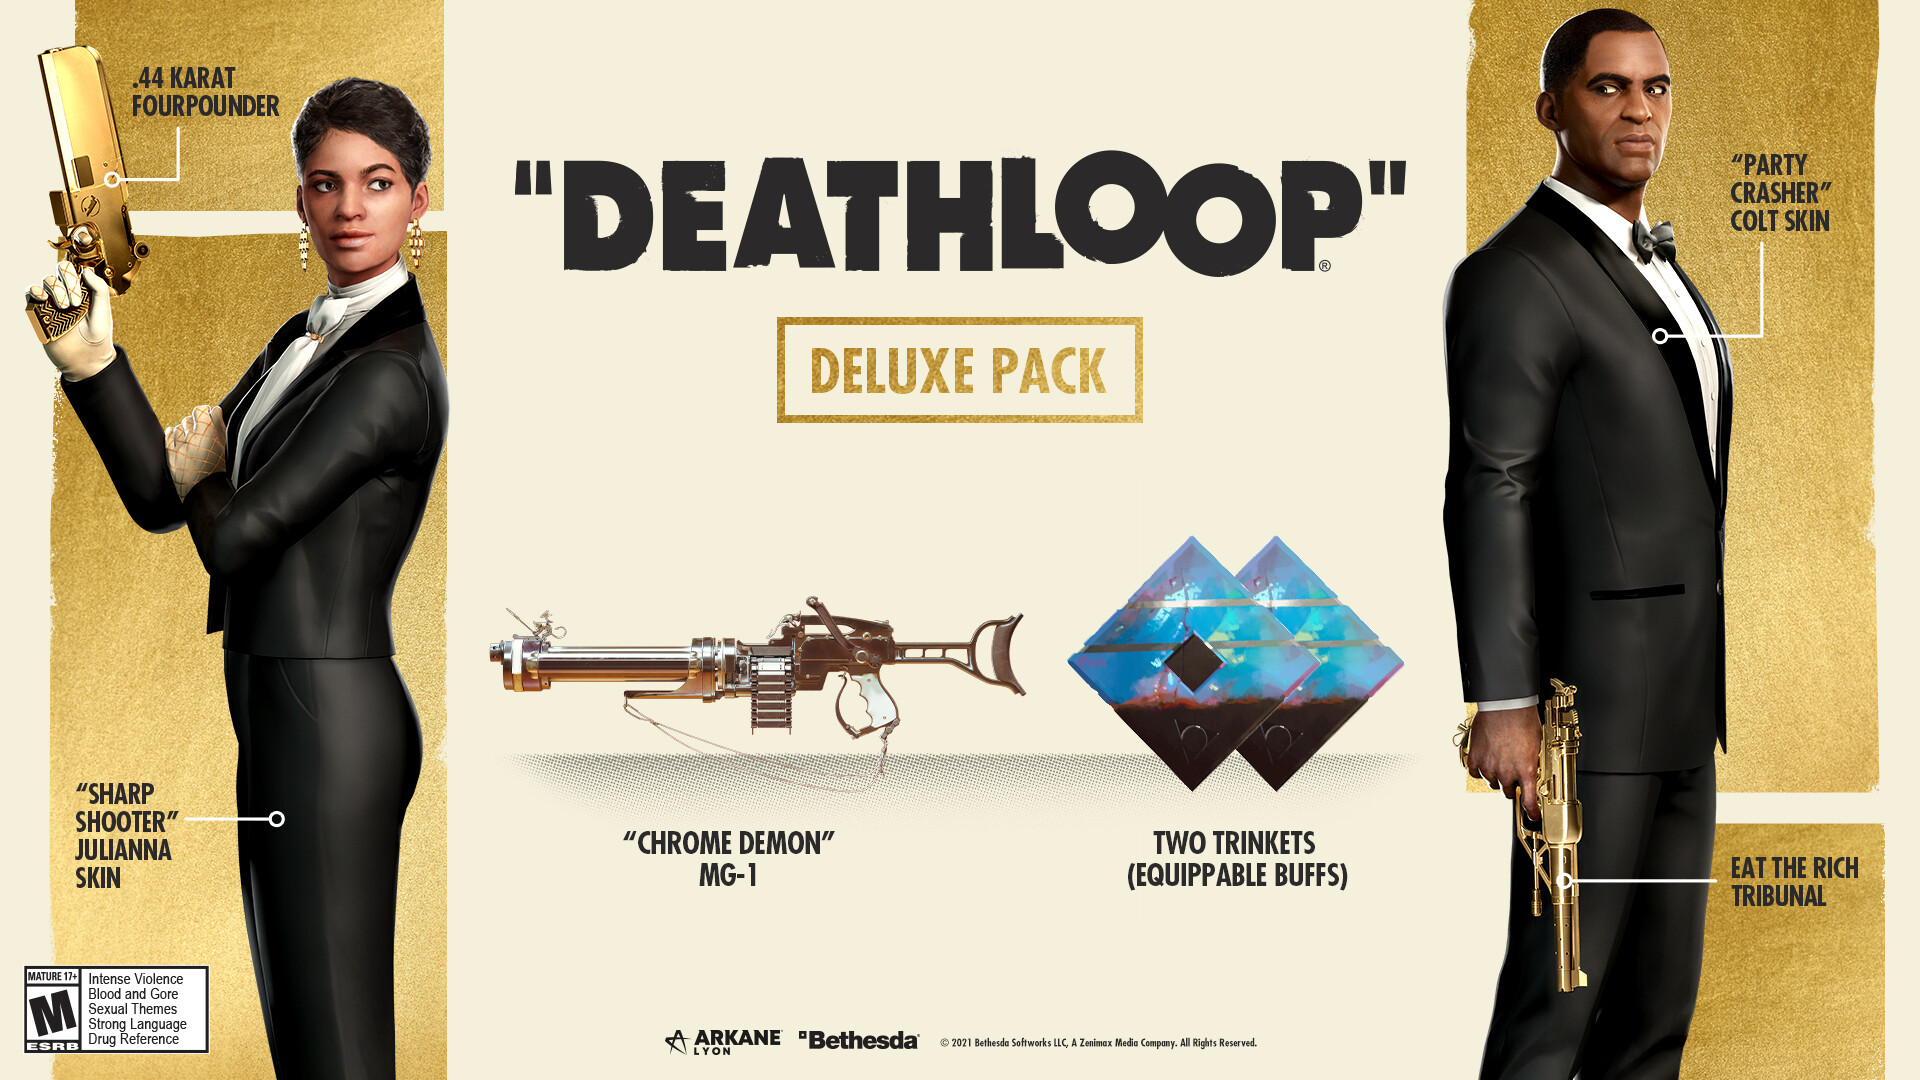 DEATHLOOP Deluxe Pack Featured Screenshot #1